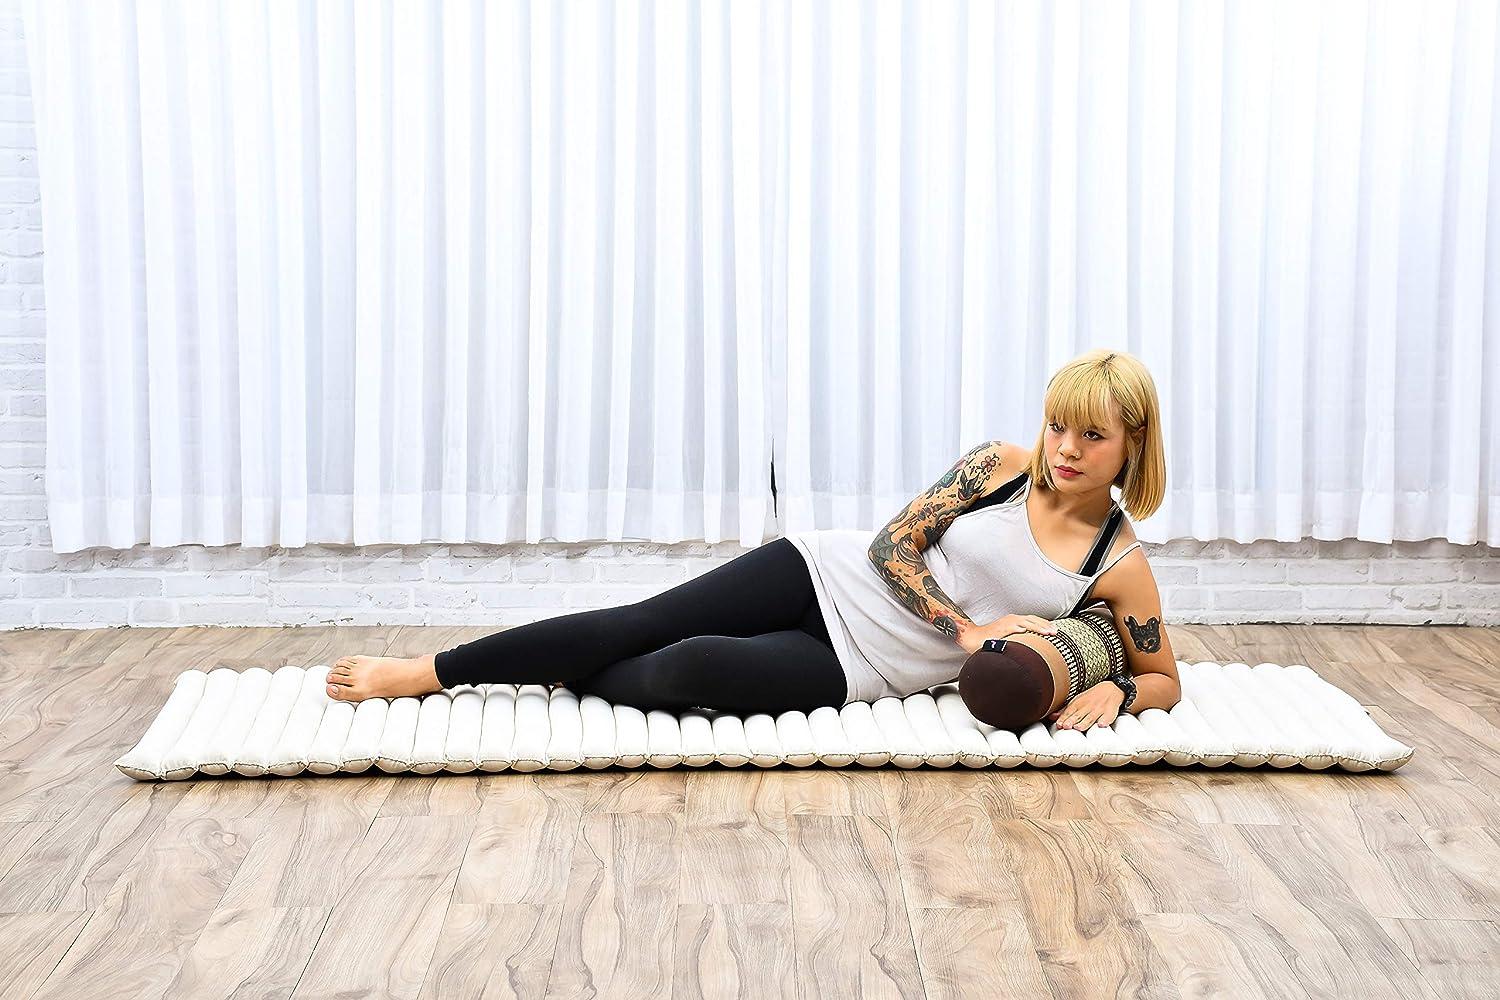 LEEWADEE Yoga Block Floor Cushion for Yoga Practice, Meditation